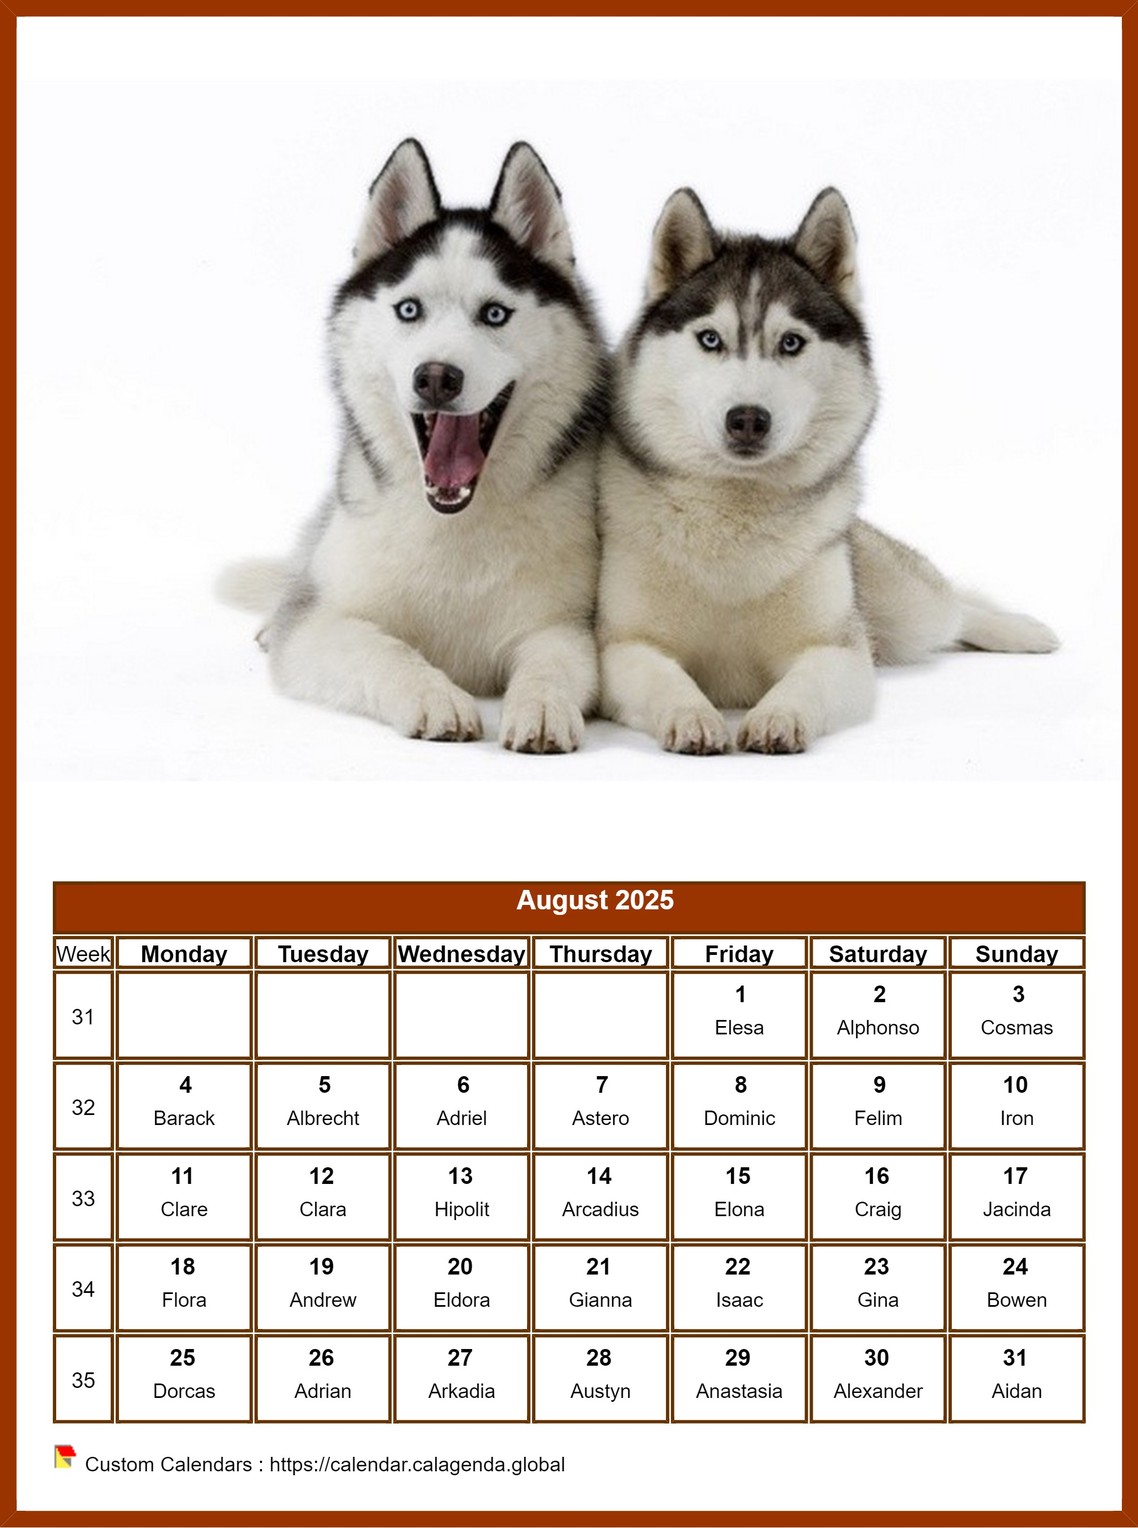 Calendar August 2025 dogs